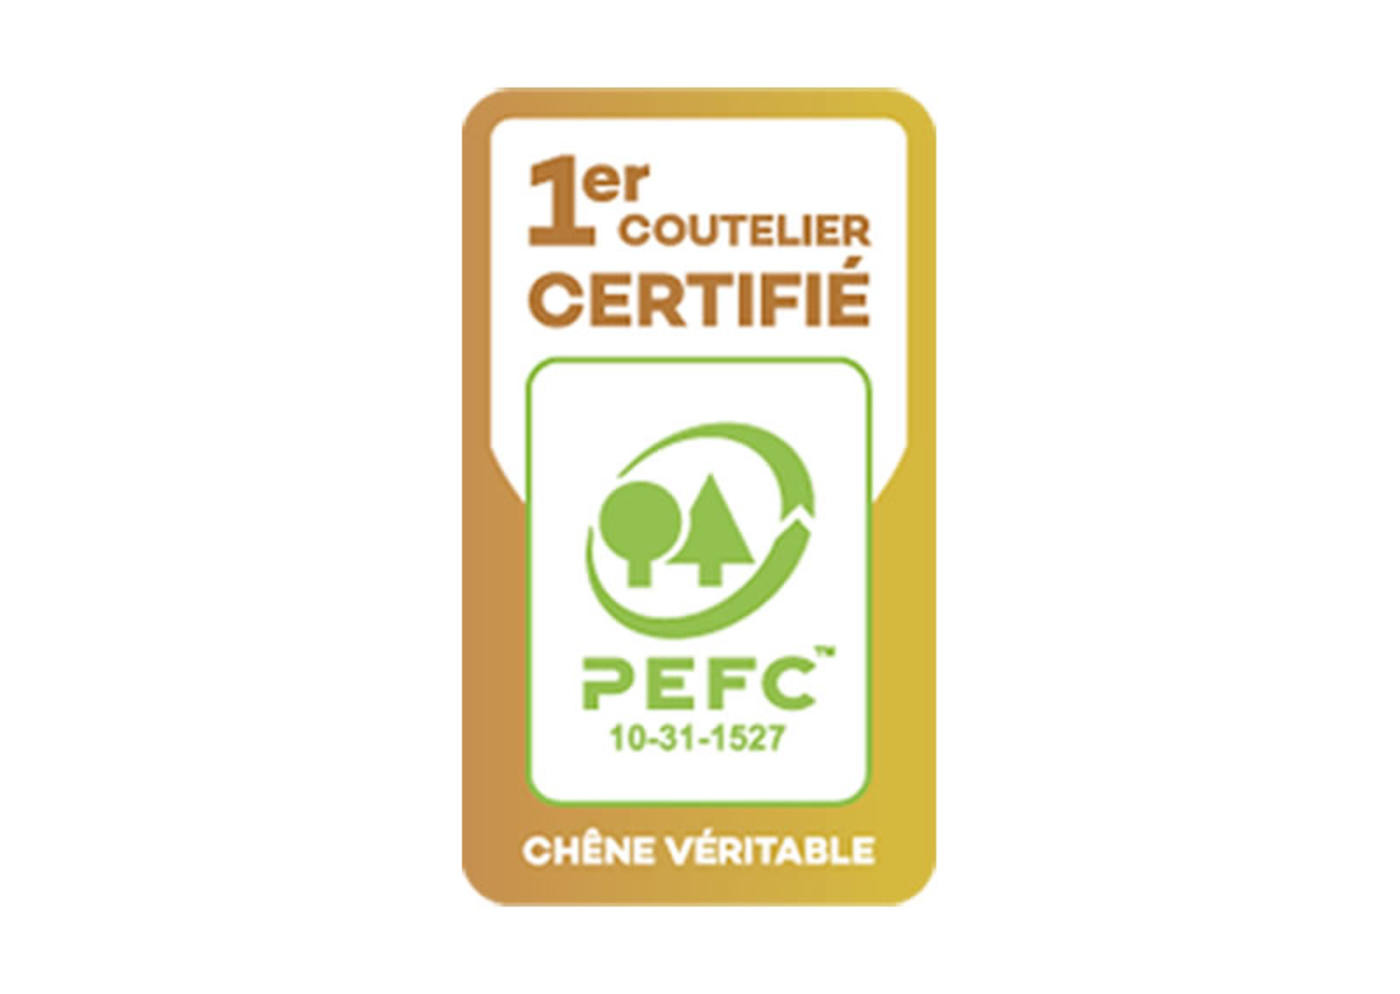 2019_Jean_Dubost_premier_coutelier_francais_certifie_PEFC_gestion_durable_des_forets_depuis_2009